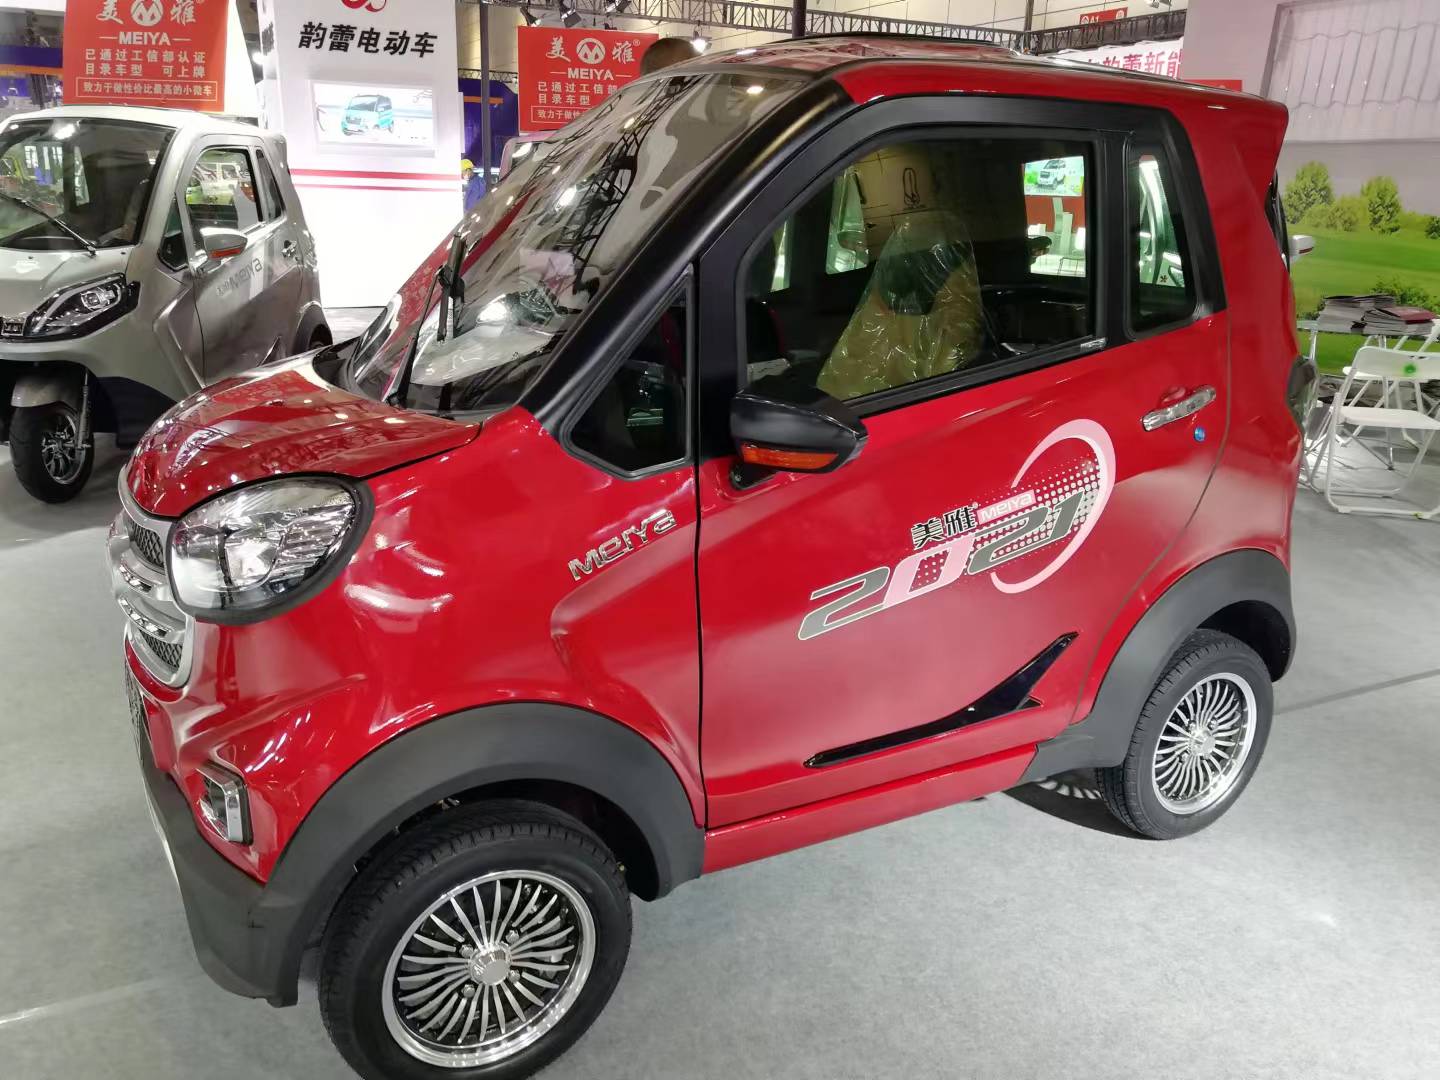 Китай МЕЙЯ
 520 электромобиль
 Новый
 Режимы
 4 Колеса
 Груз
 3 пассажира Сделано на заводе в Китае, производитель